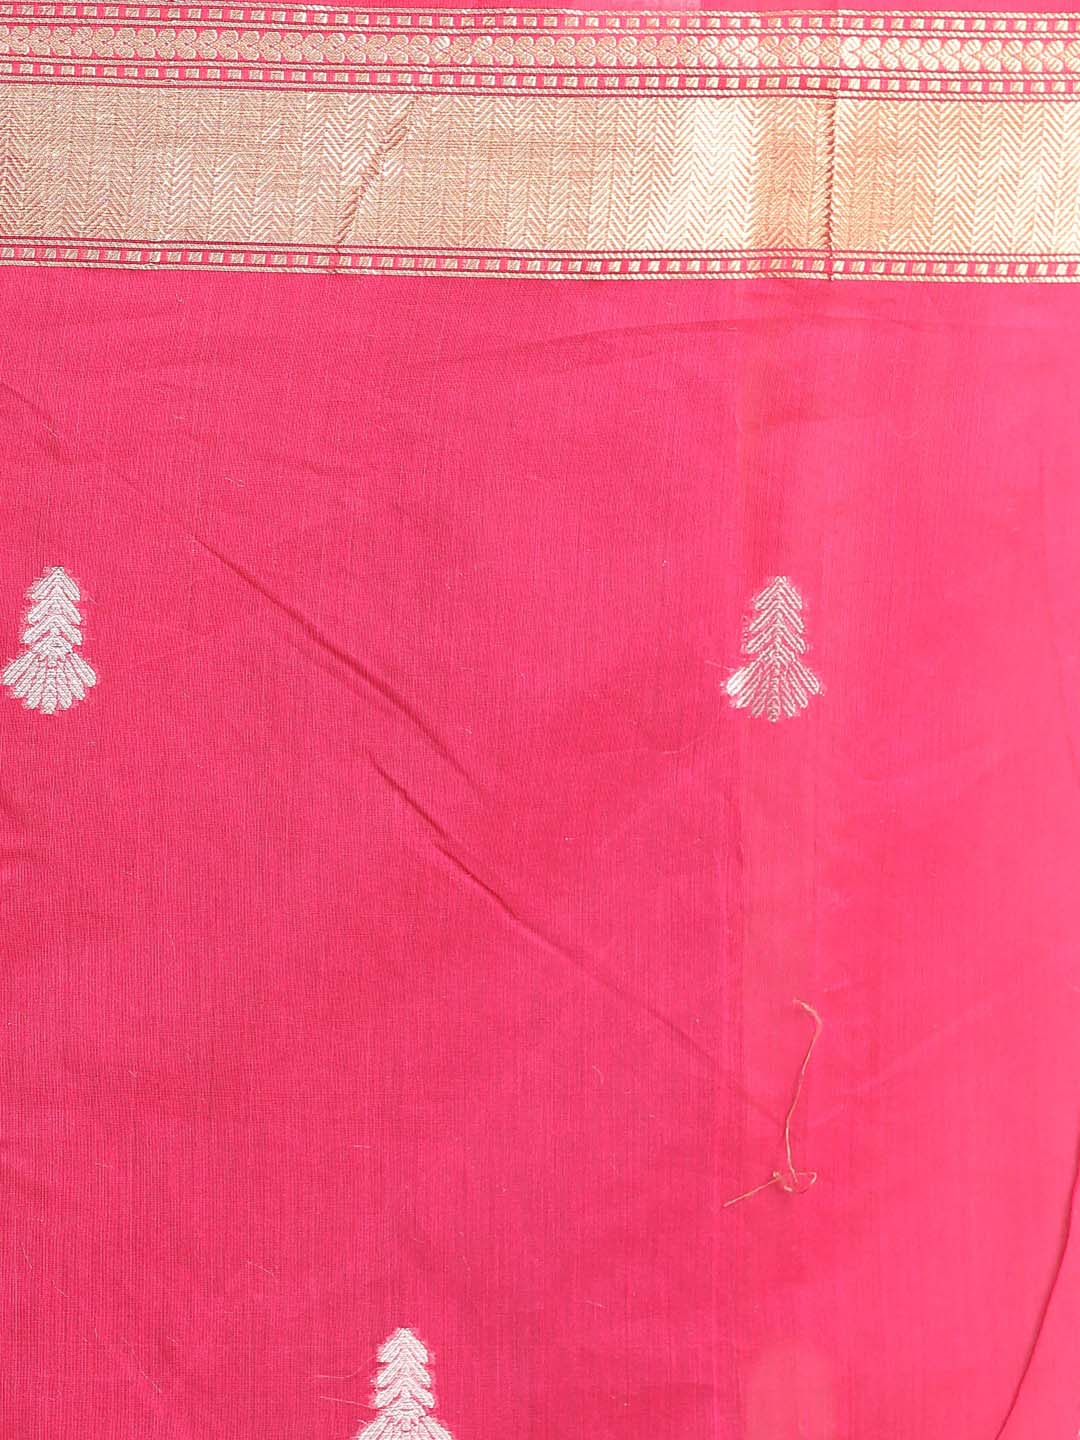 Indethnic Banarasi Magenta Woven Design Daily Wear Saree - Saree Detail View